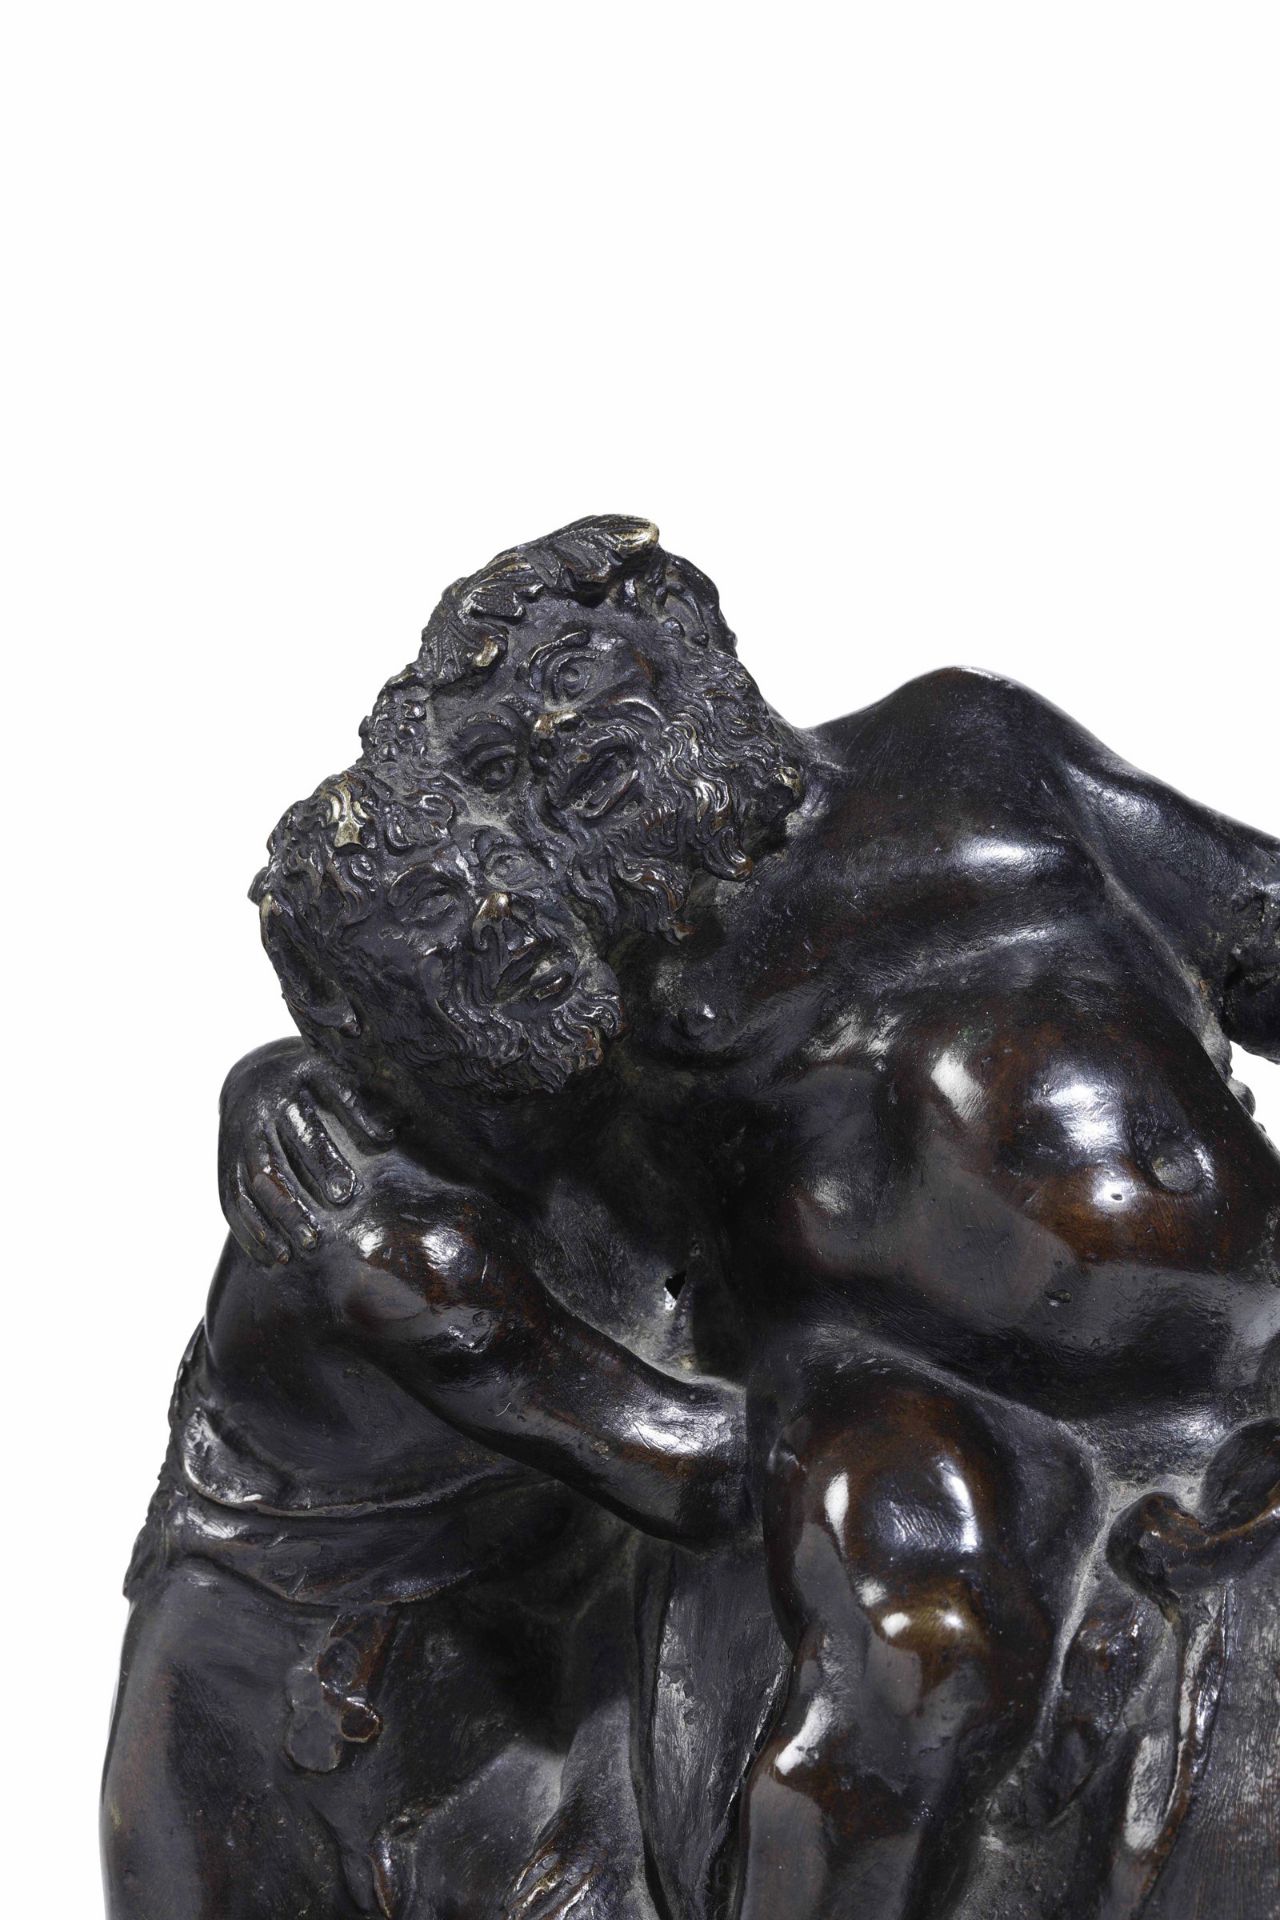 A bronze group, Italian-Flemish artist, 15-1600s - cm 26x20. L’insolita e buffa [...] - Image 2 of 2